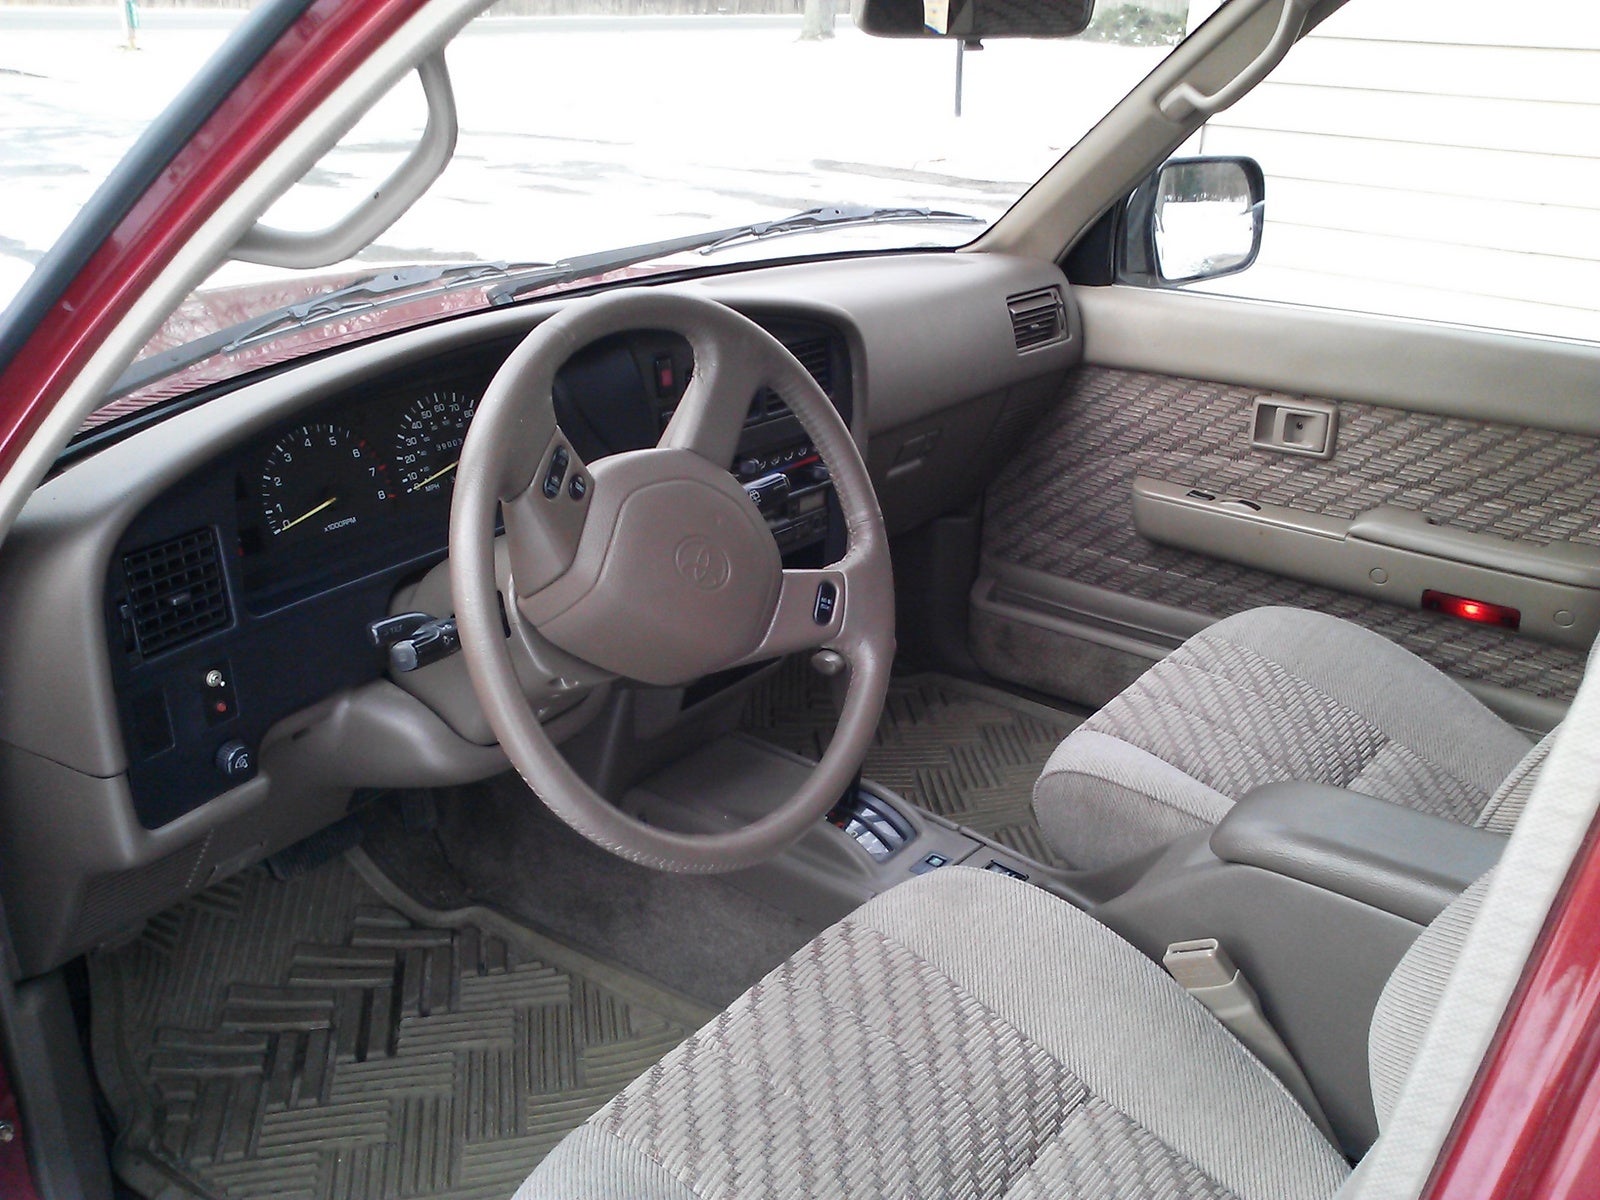 1994 Toyota 4Runner - Interior Pictures - CarGurus